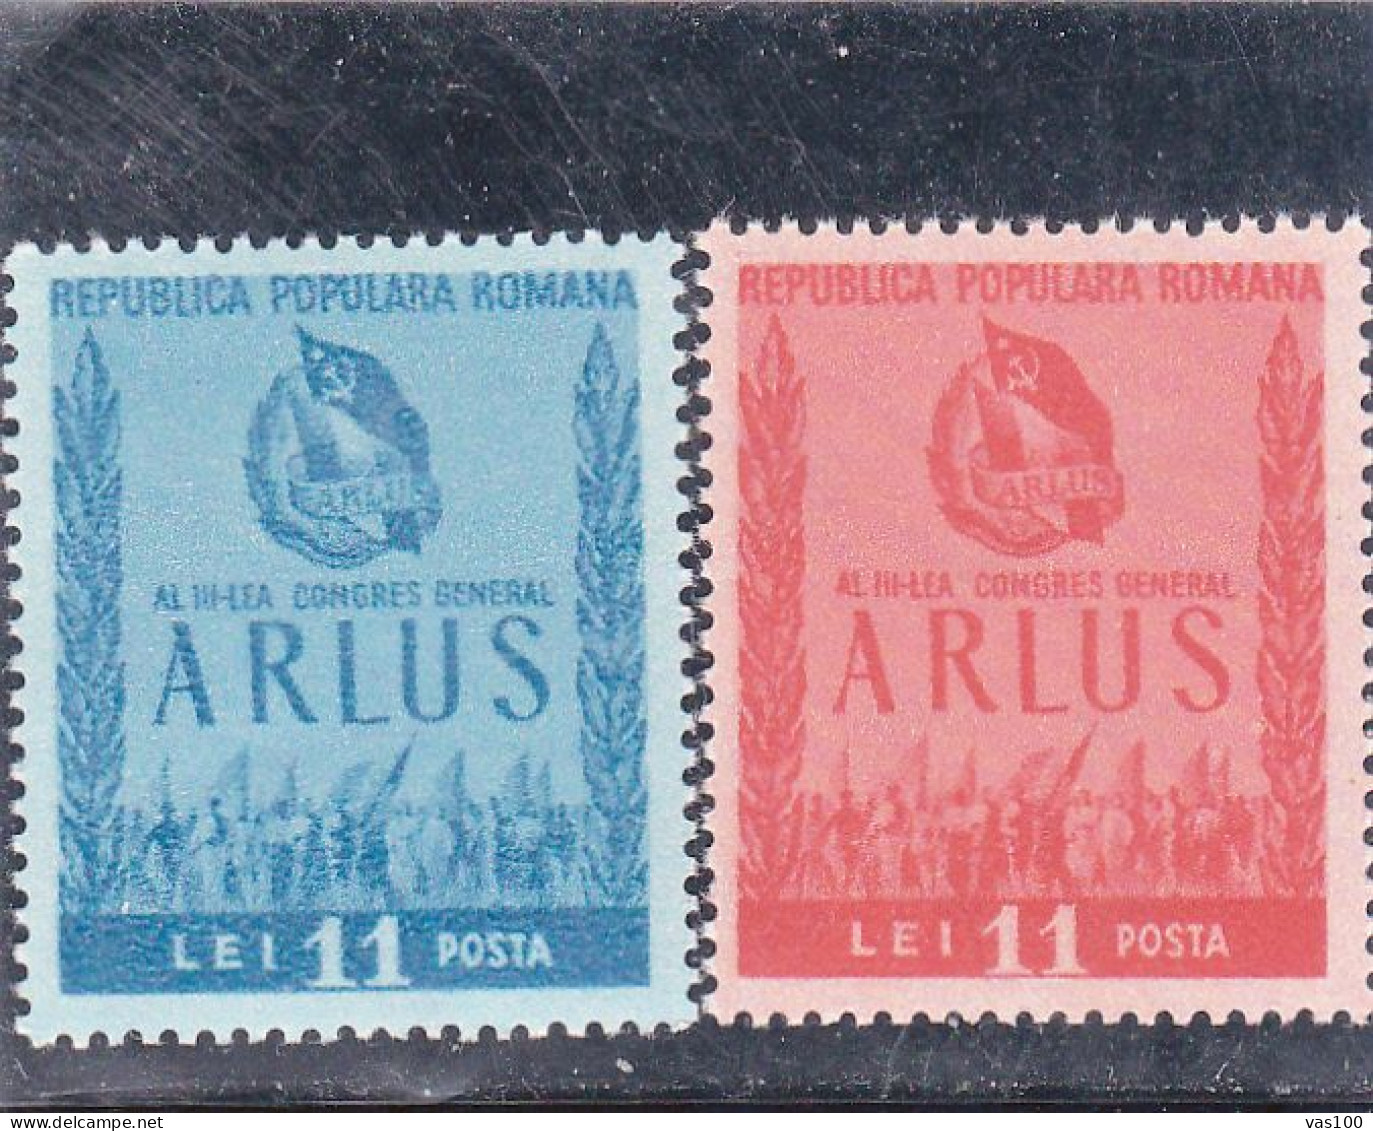 ARLUS CONGRESS,1950,MI.1240/41, MNH**, ROMANIA. - Nuevos